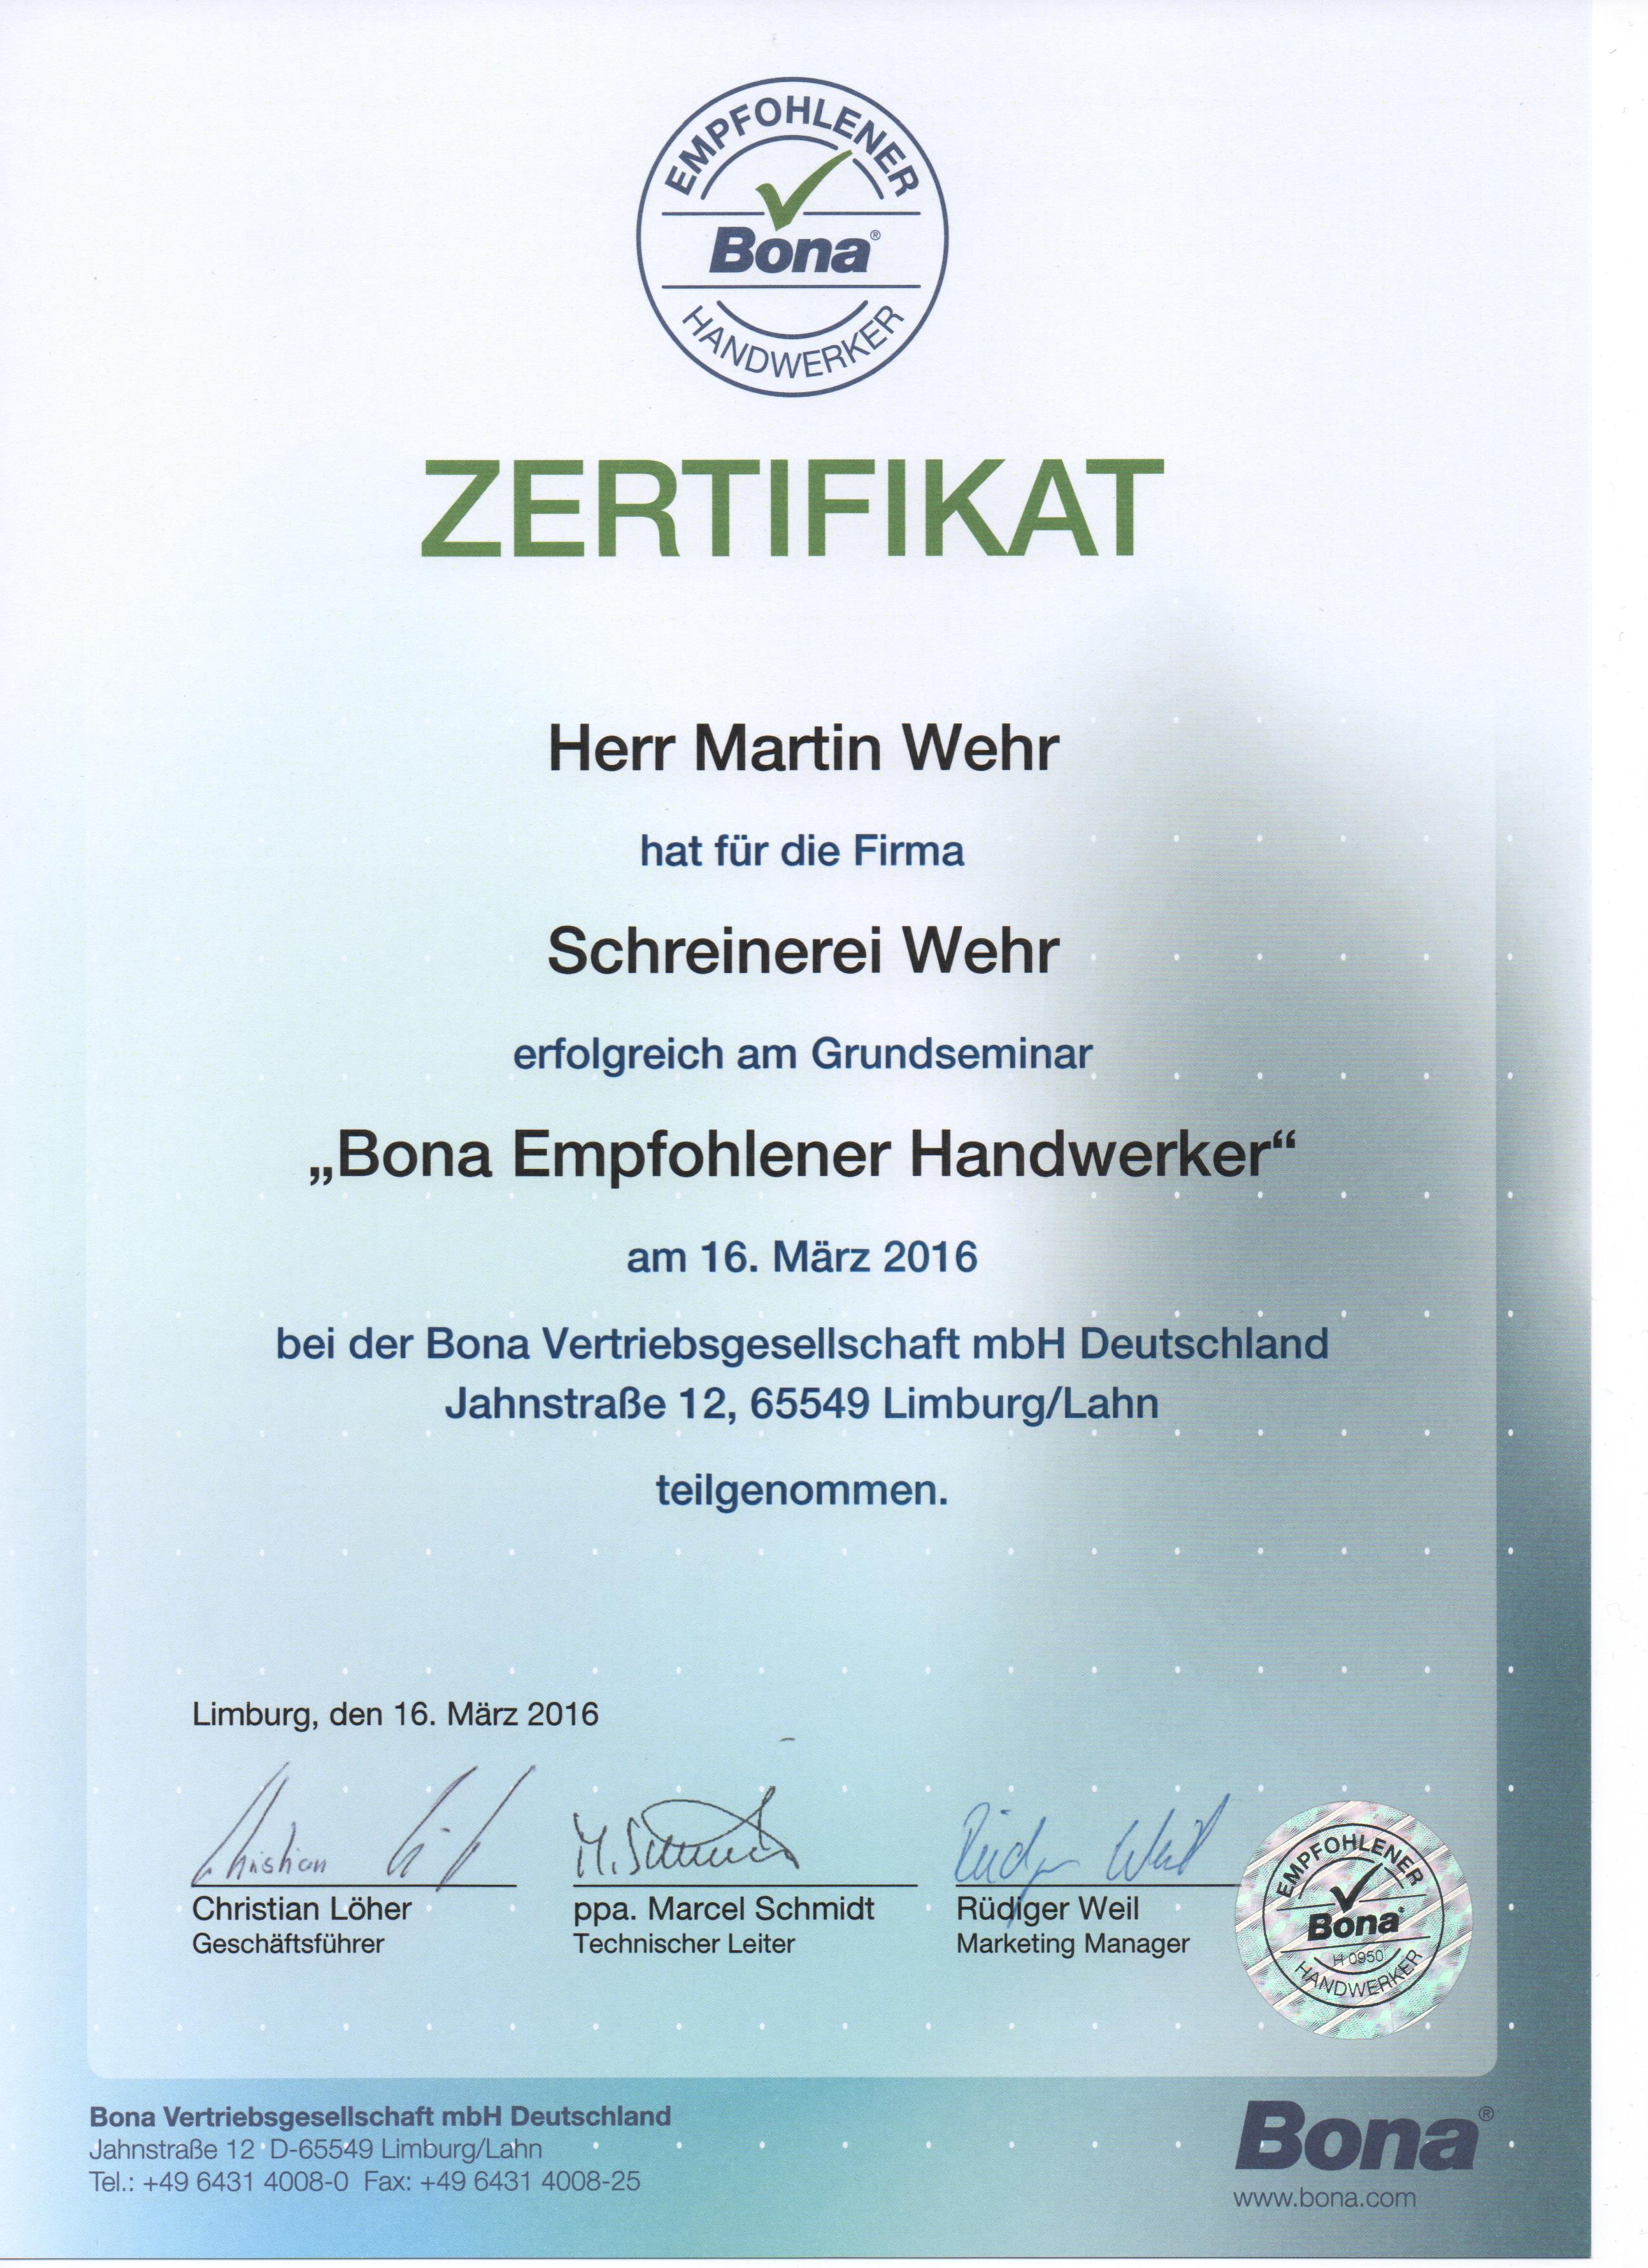 Zertifikat Bona